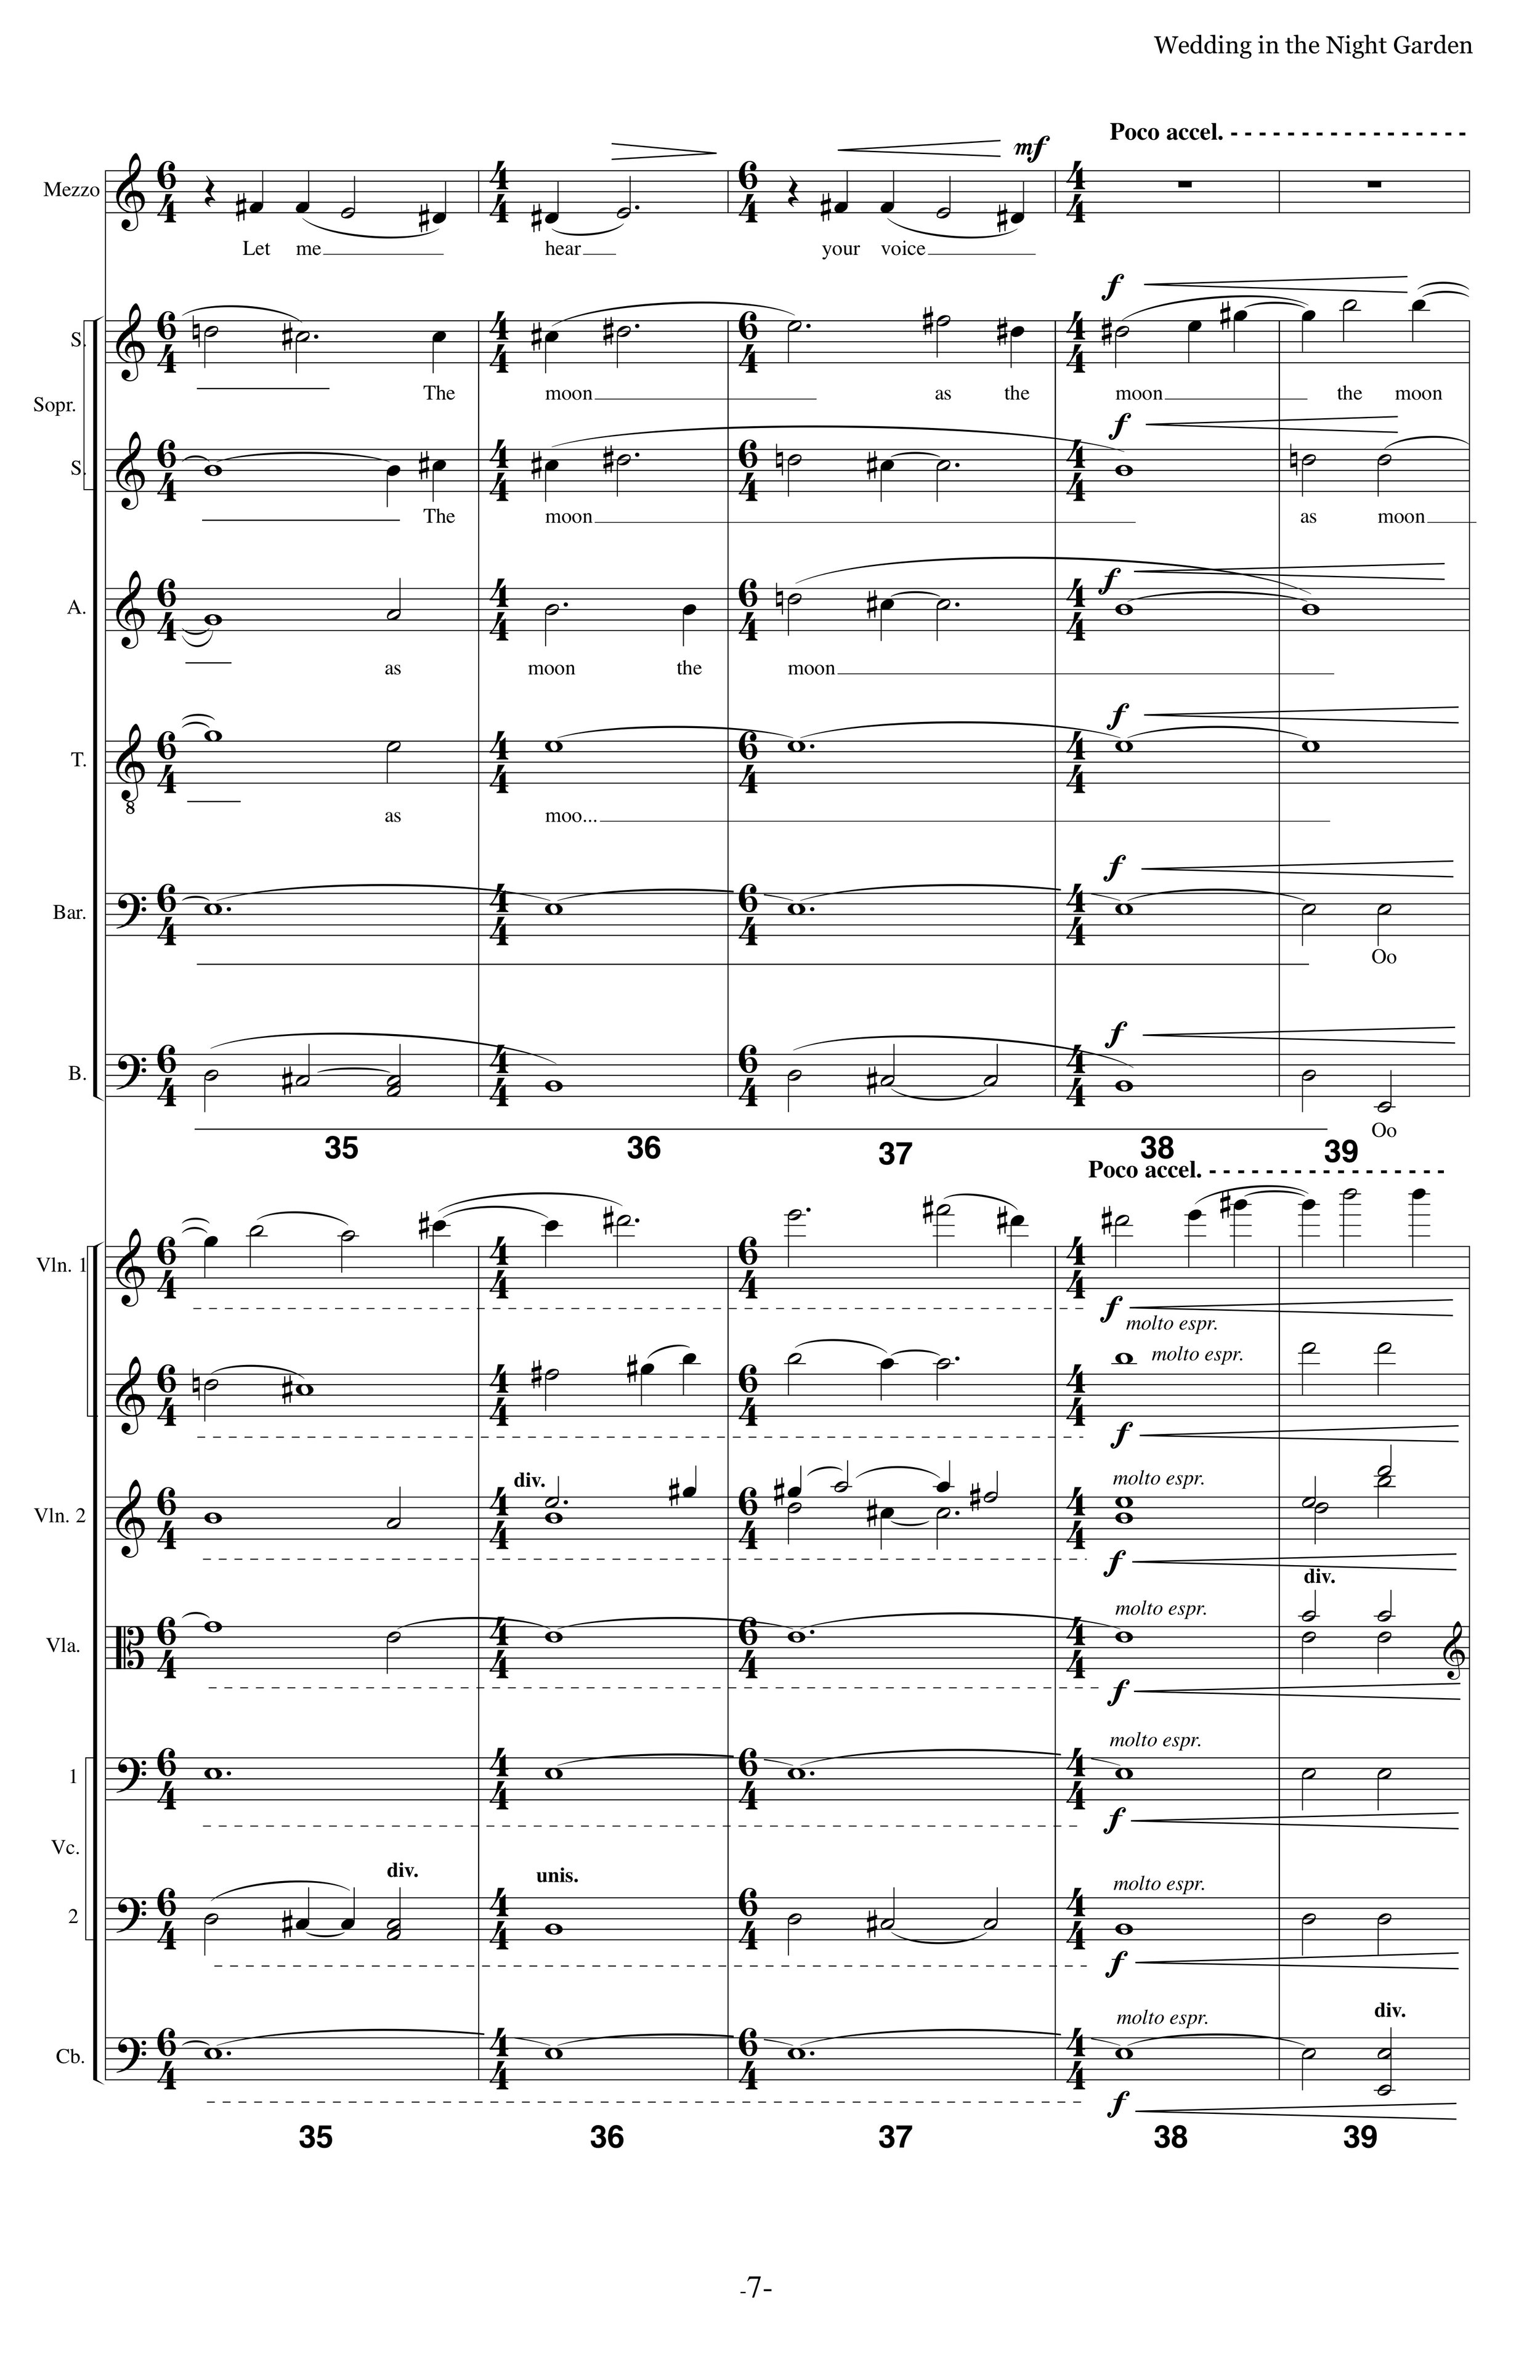 WITNG_MS Strings Choir p7.jpg